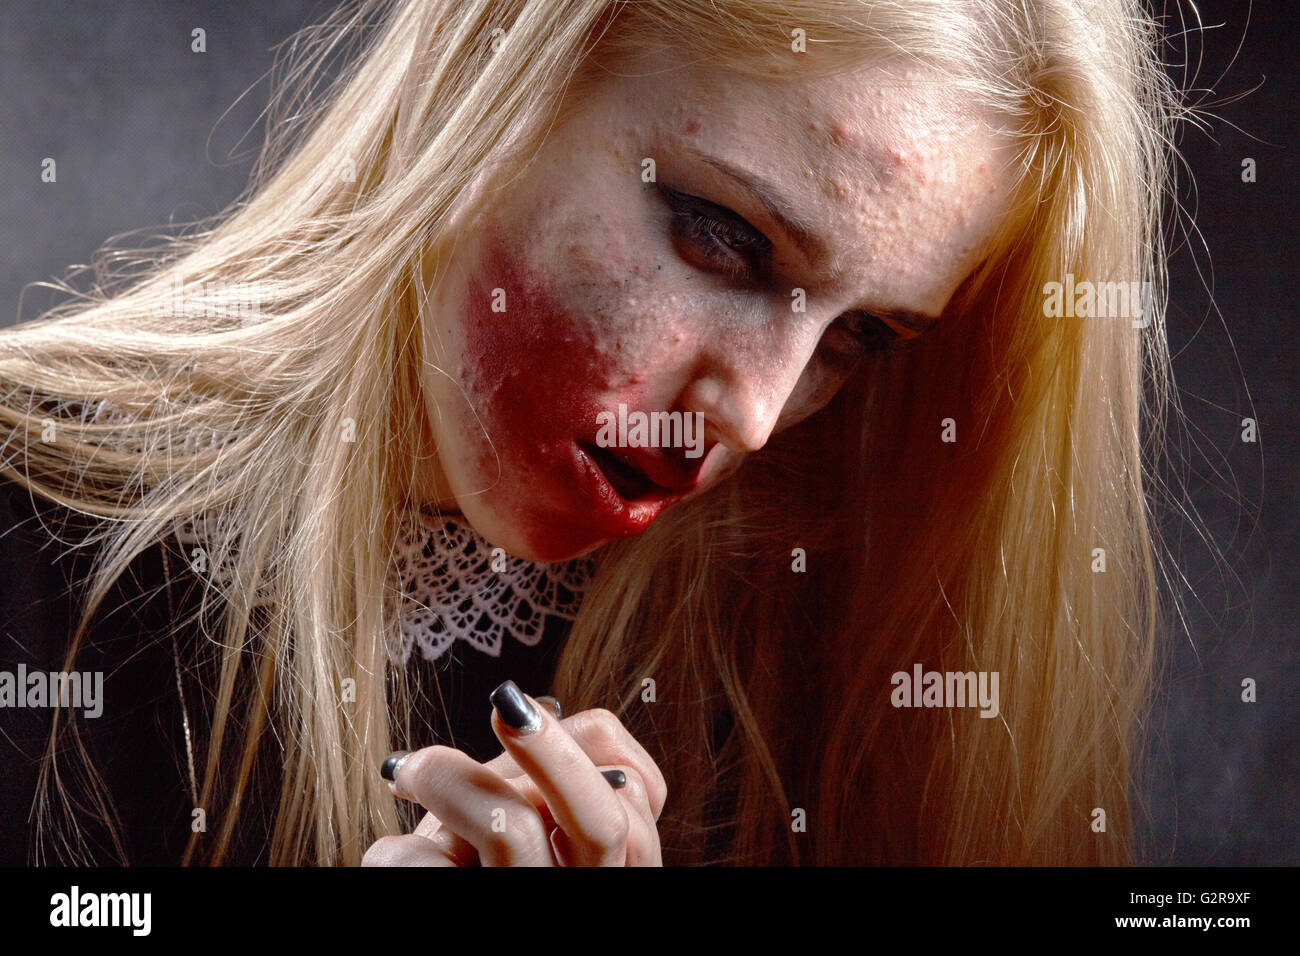 traurig, nachdenklich Mädchen mit verschmierten Kosmetik auf finnigen Haut auf schwarzem Hintergrund, Stockfoto